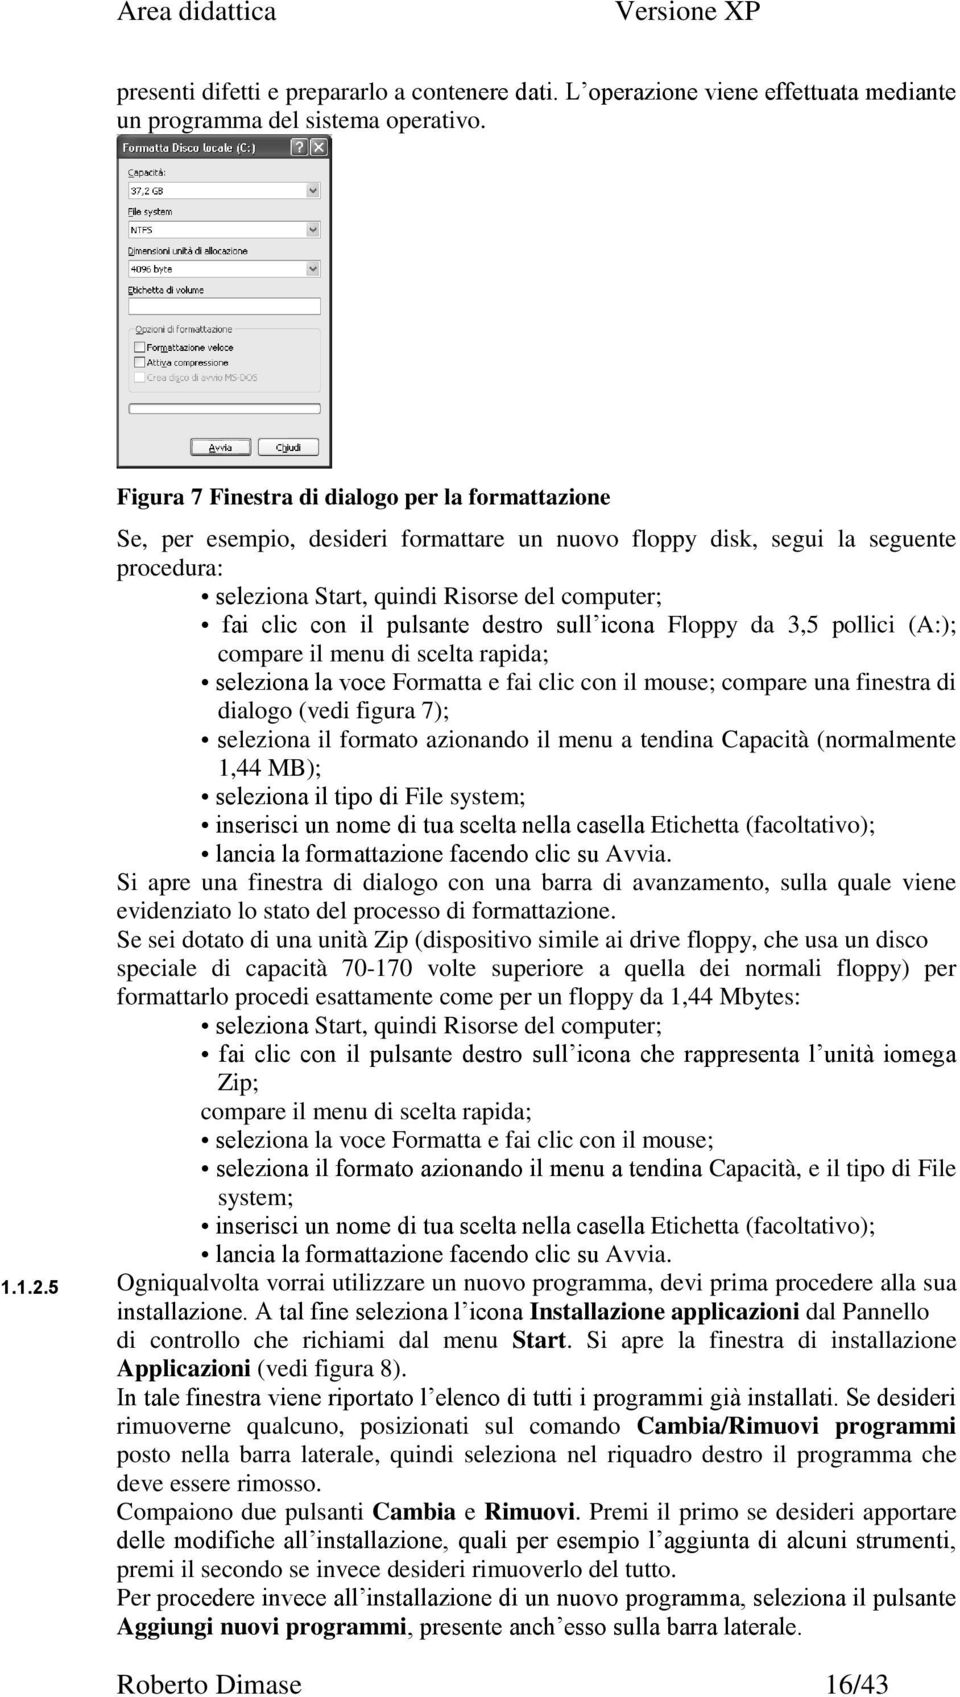 il pulsante destro sull icona Floppy da 3,5 pollici (A:); compare il menu di scelta rapida; seleziona la voce Formatta e fai clic con il mouse; compare una finestra di dialogo (vedi figura 7);